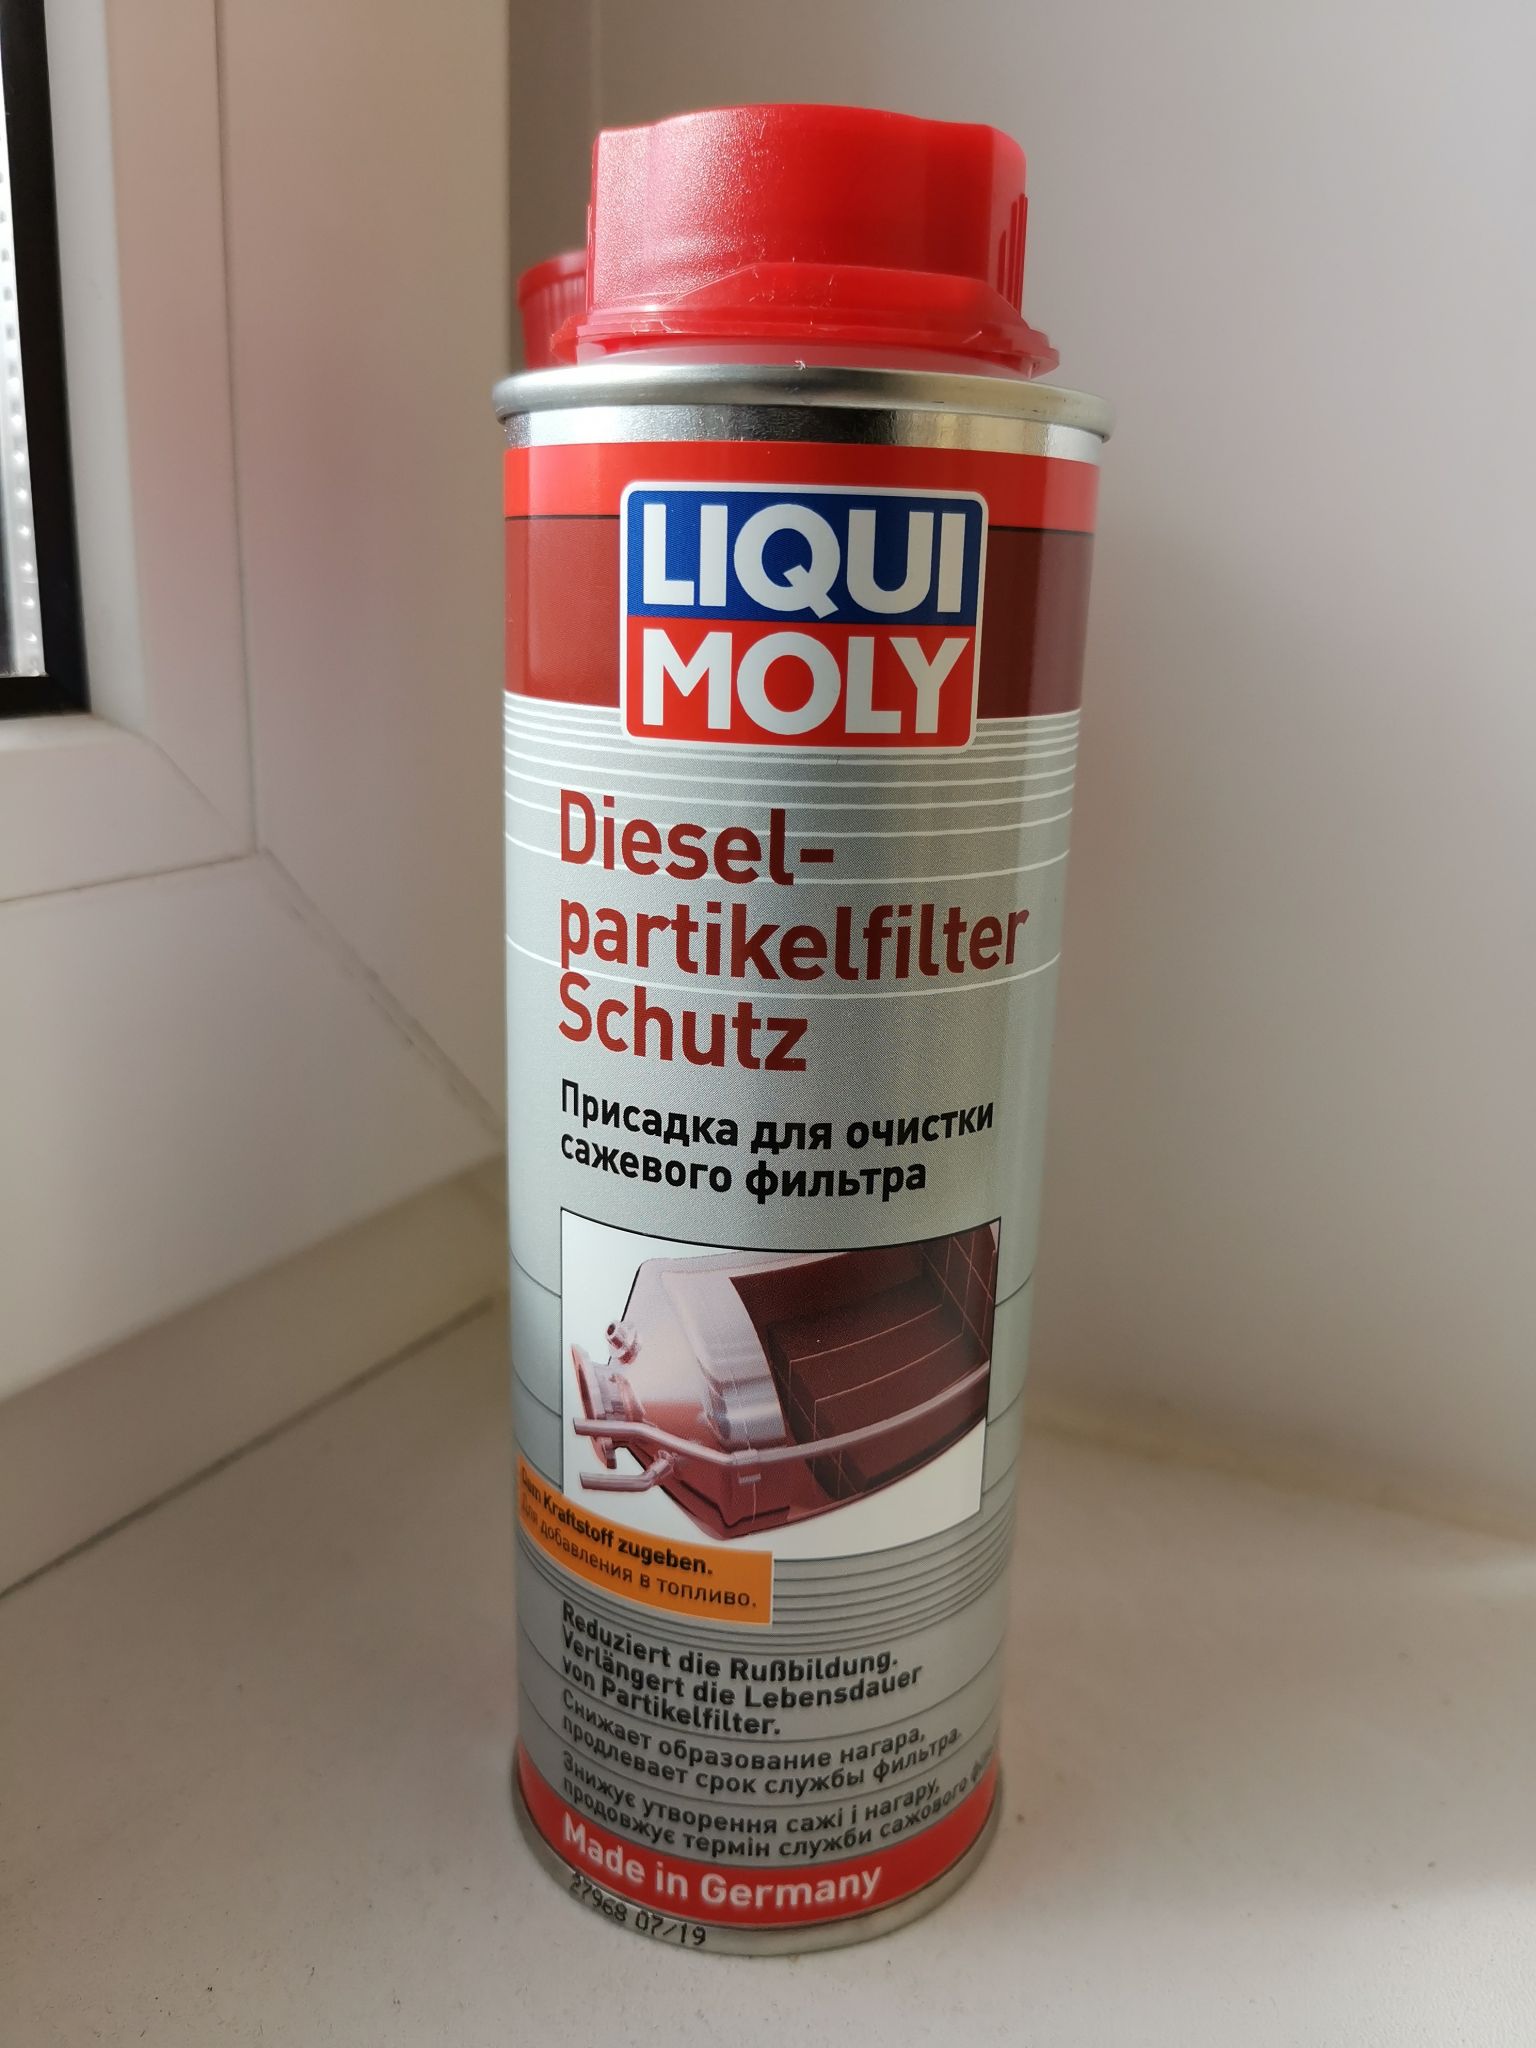 Очистка сажевого присадка. Liqui Moly Diesel Partikelfilter Schutz. Liqui Moly Diesel. Liqui Moly для сажевого фильтра. Ликви моли для дизеля присадка 2010.